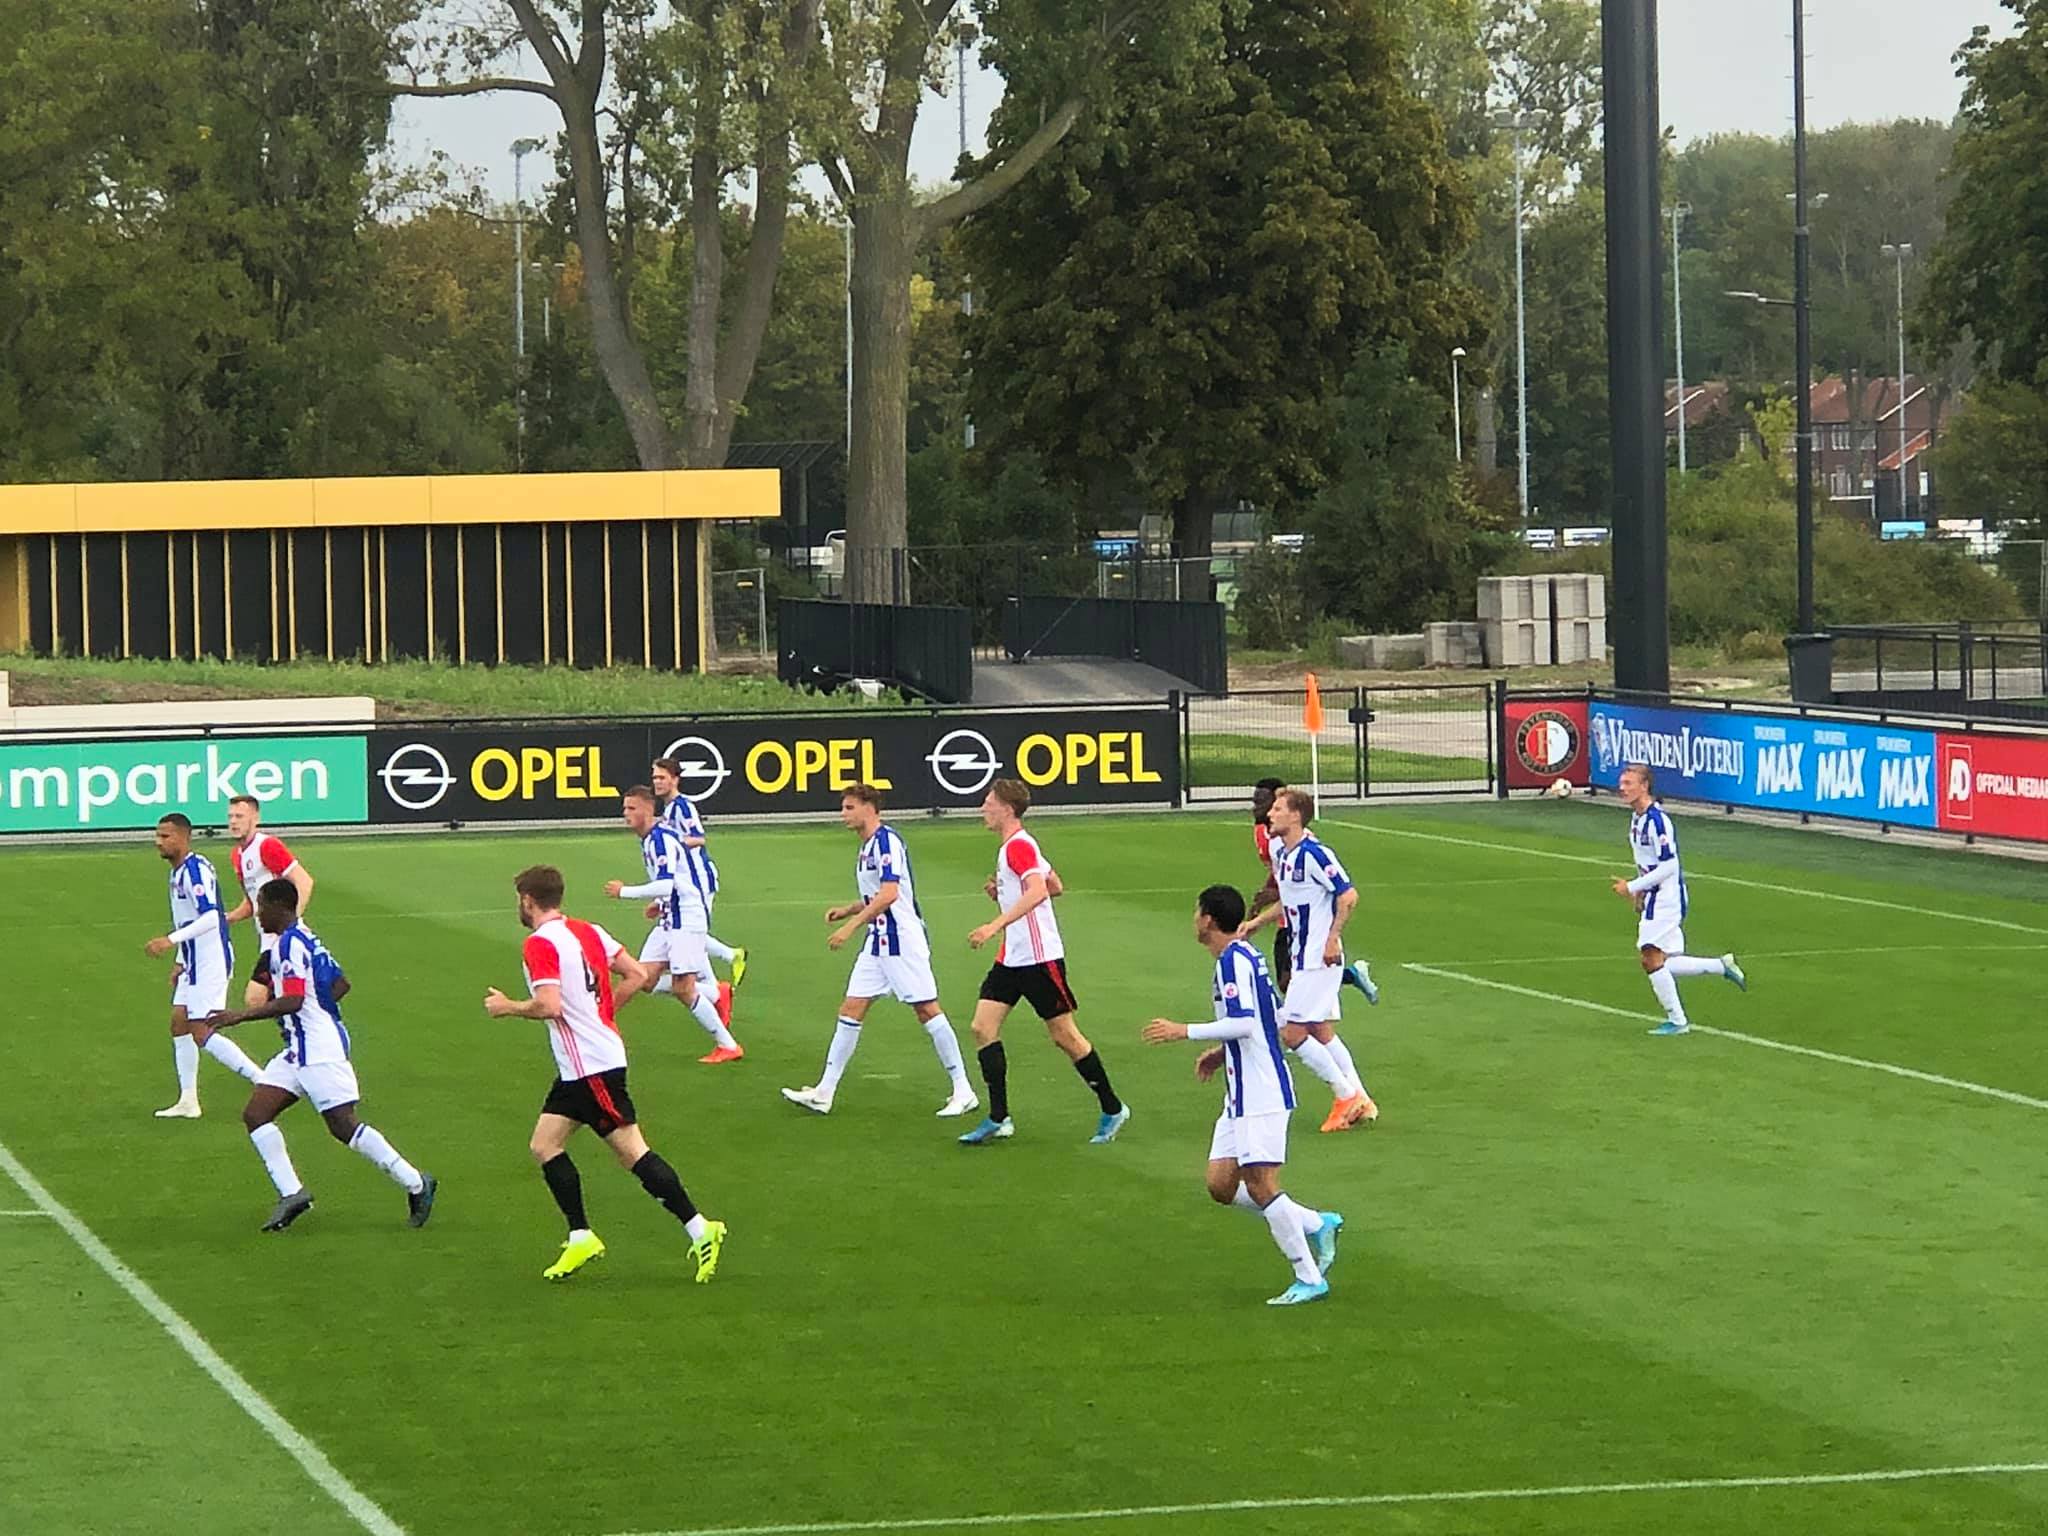 đoàn văn hậu, HLV Johnny Jansen, sc heerenveen, Văn hậu thi đấu tại Hà Lan, heerenveen vs VVV-Venlo